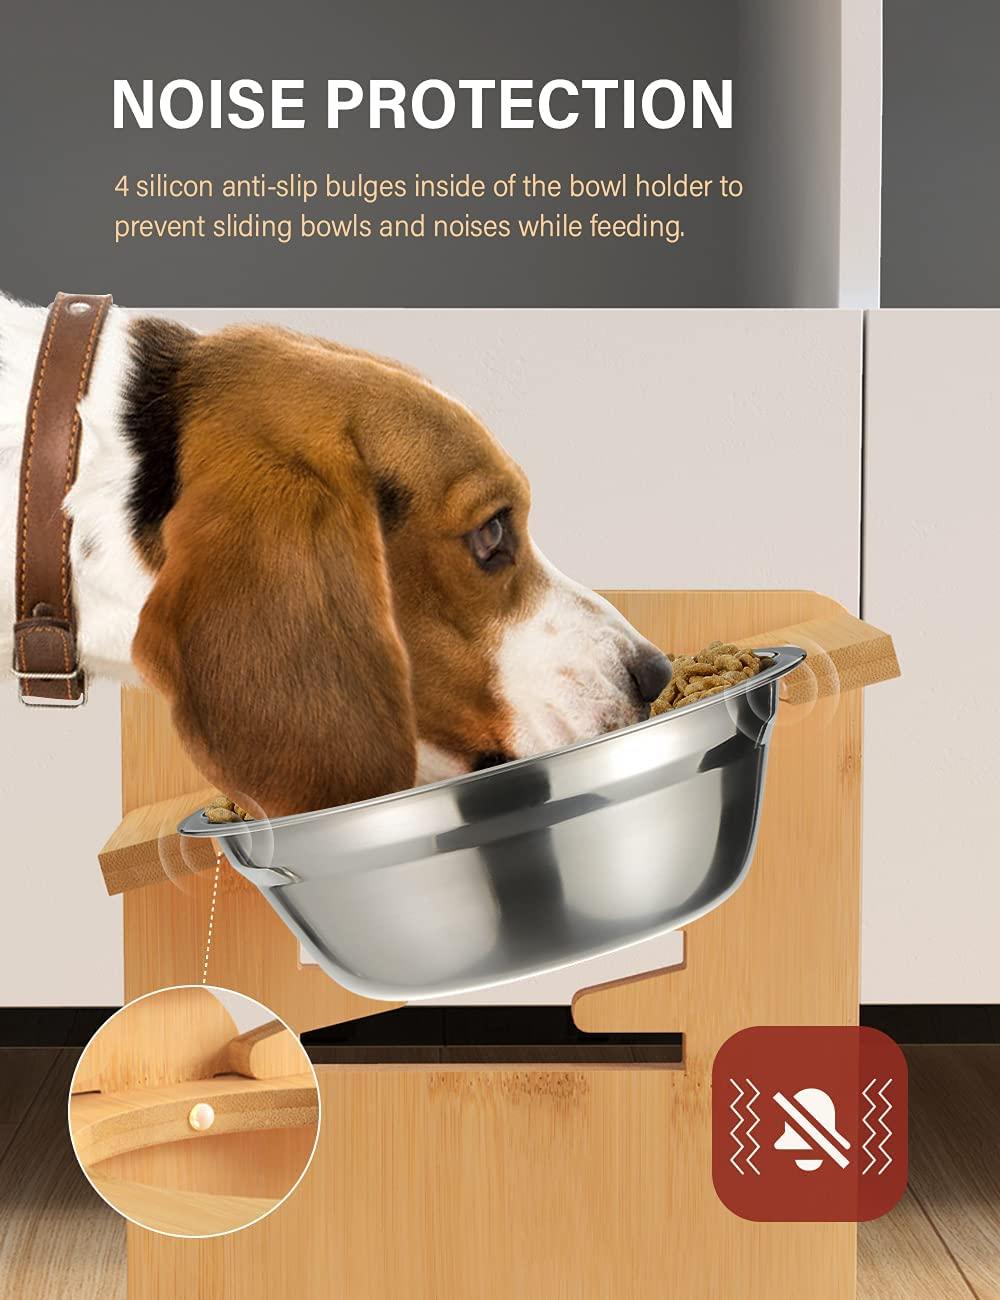 Dog Bowl For Large Dogs, Adjustable Elevated Dog Bowl, Pet Food